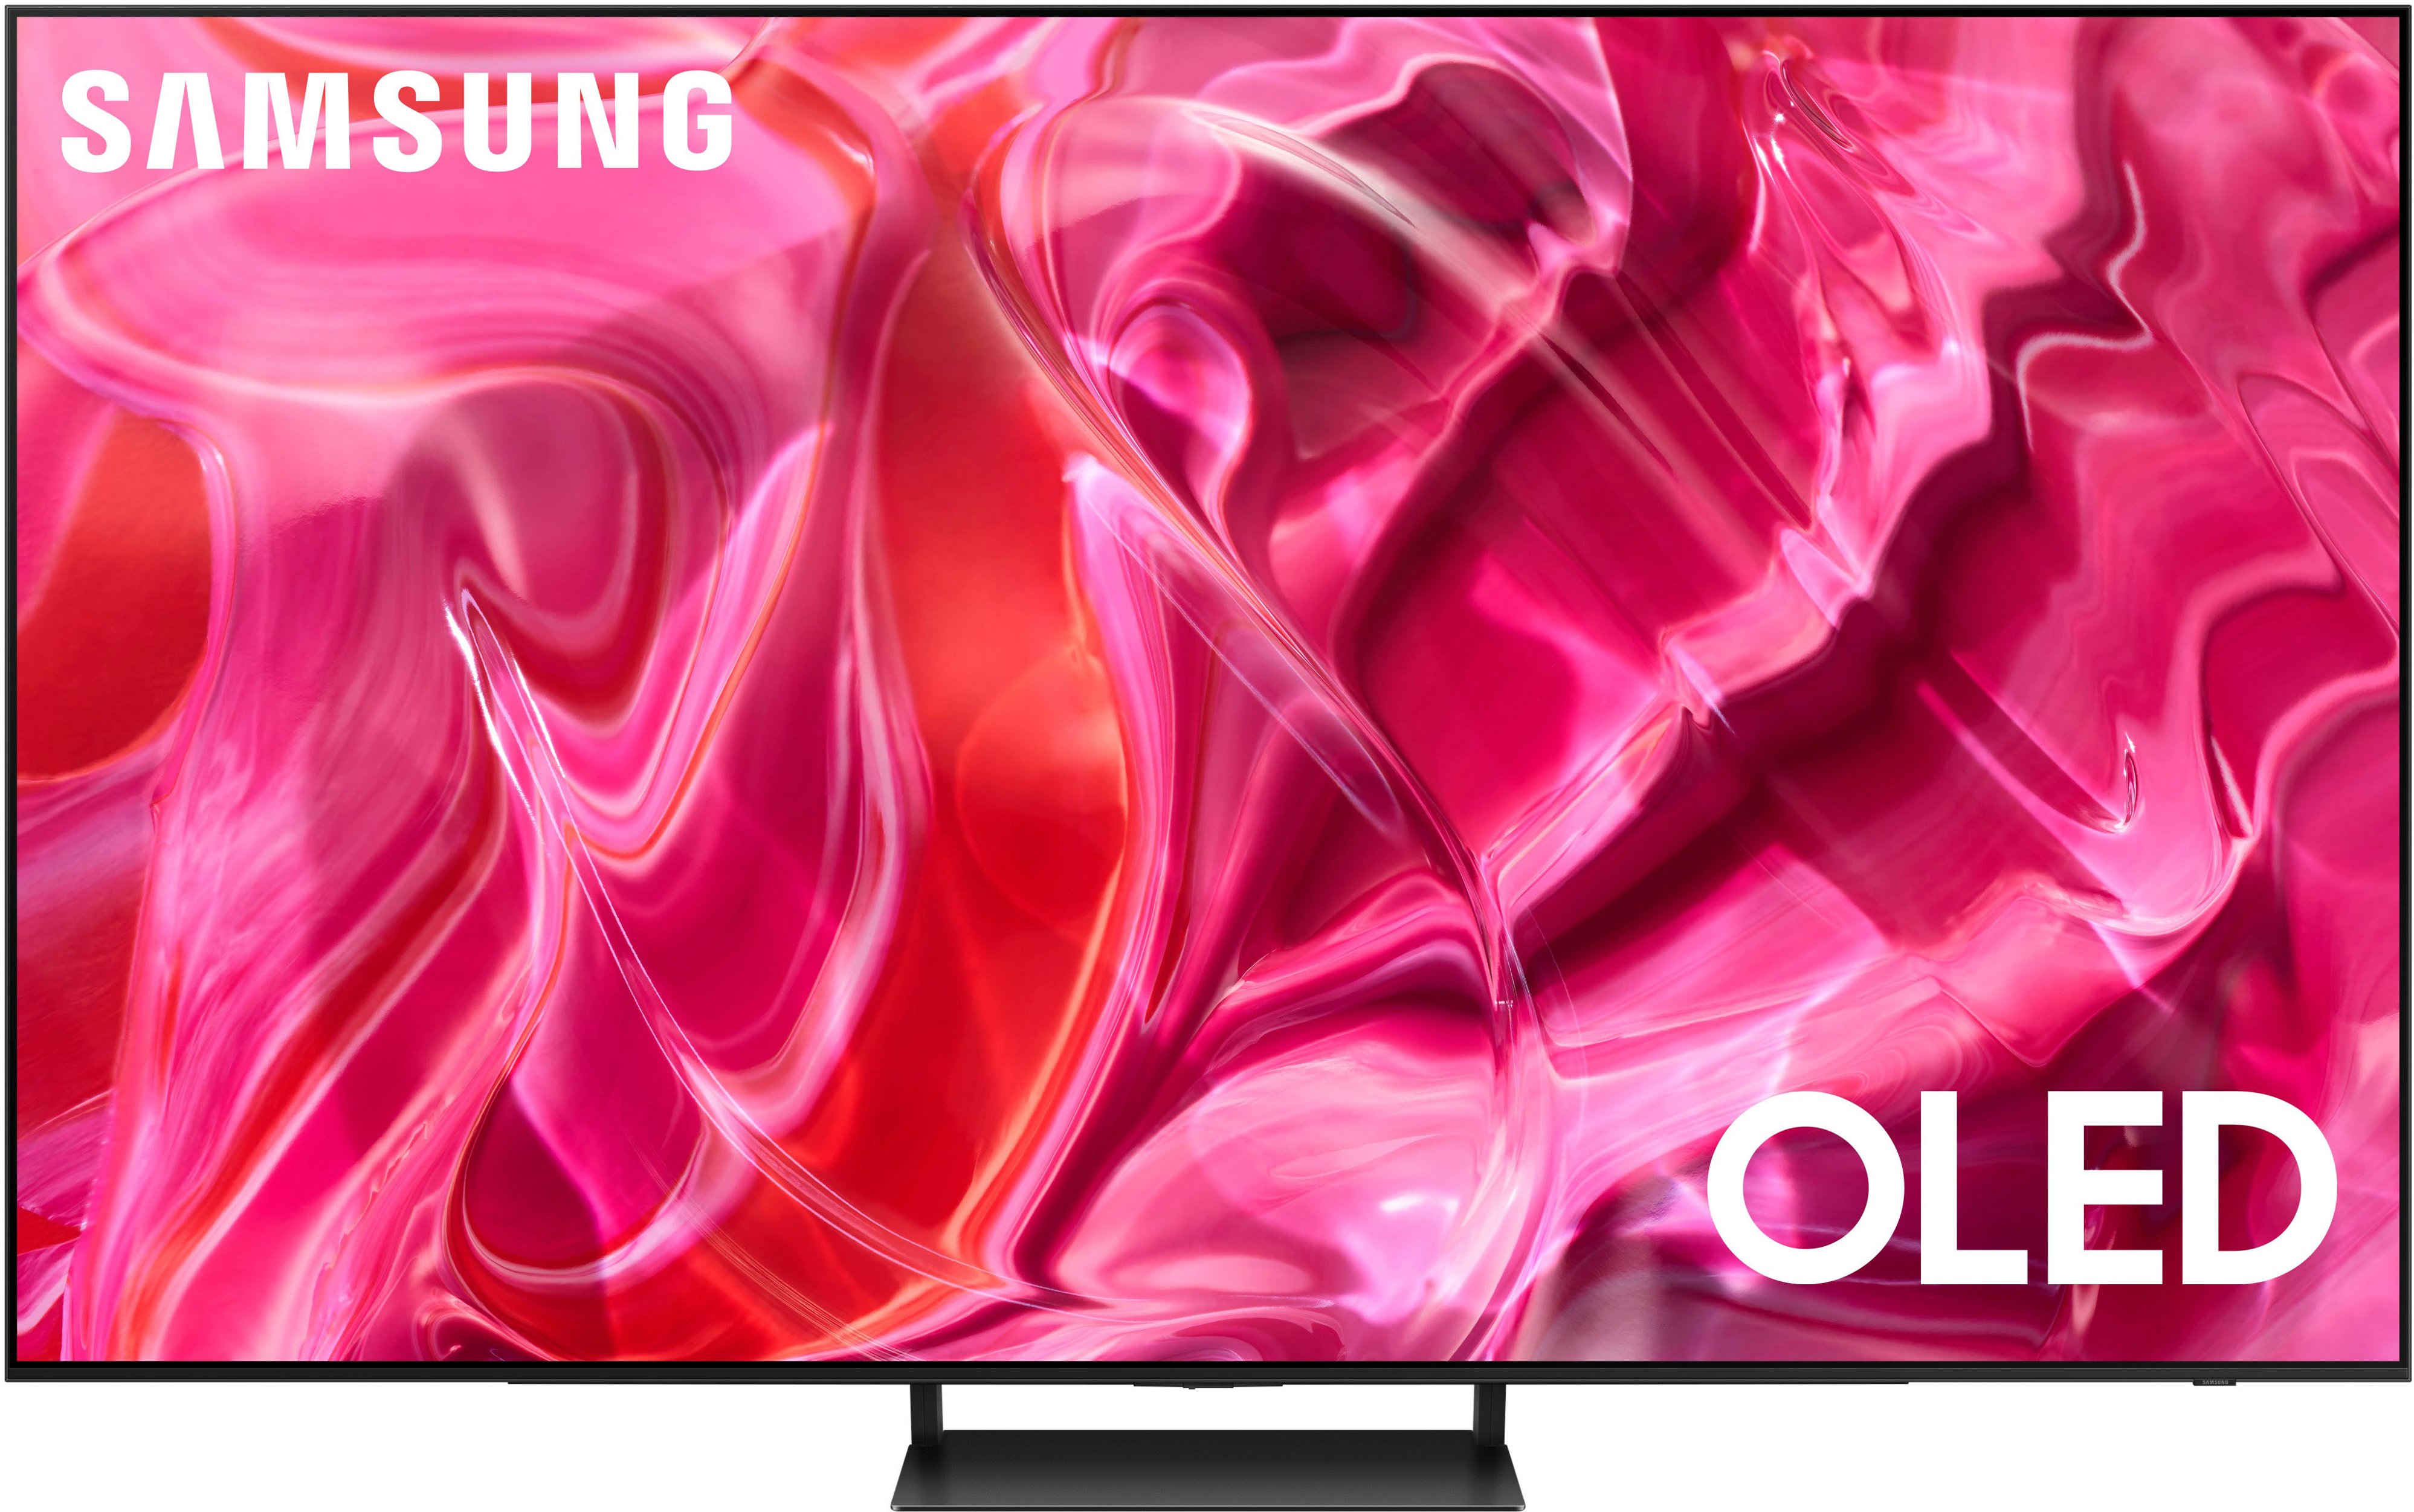 Samsung 55 inch TVs